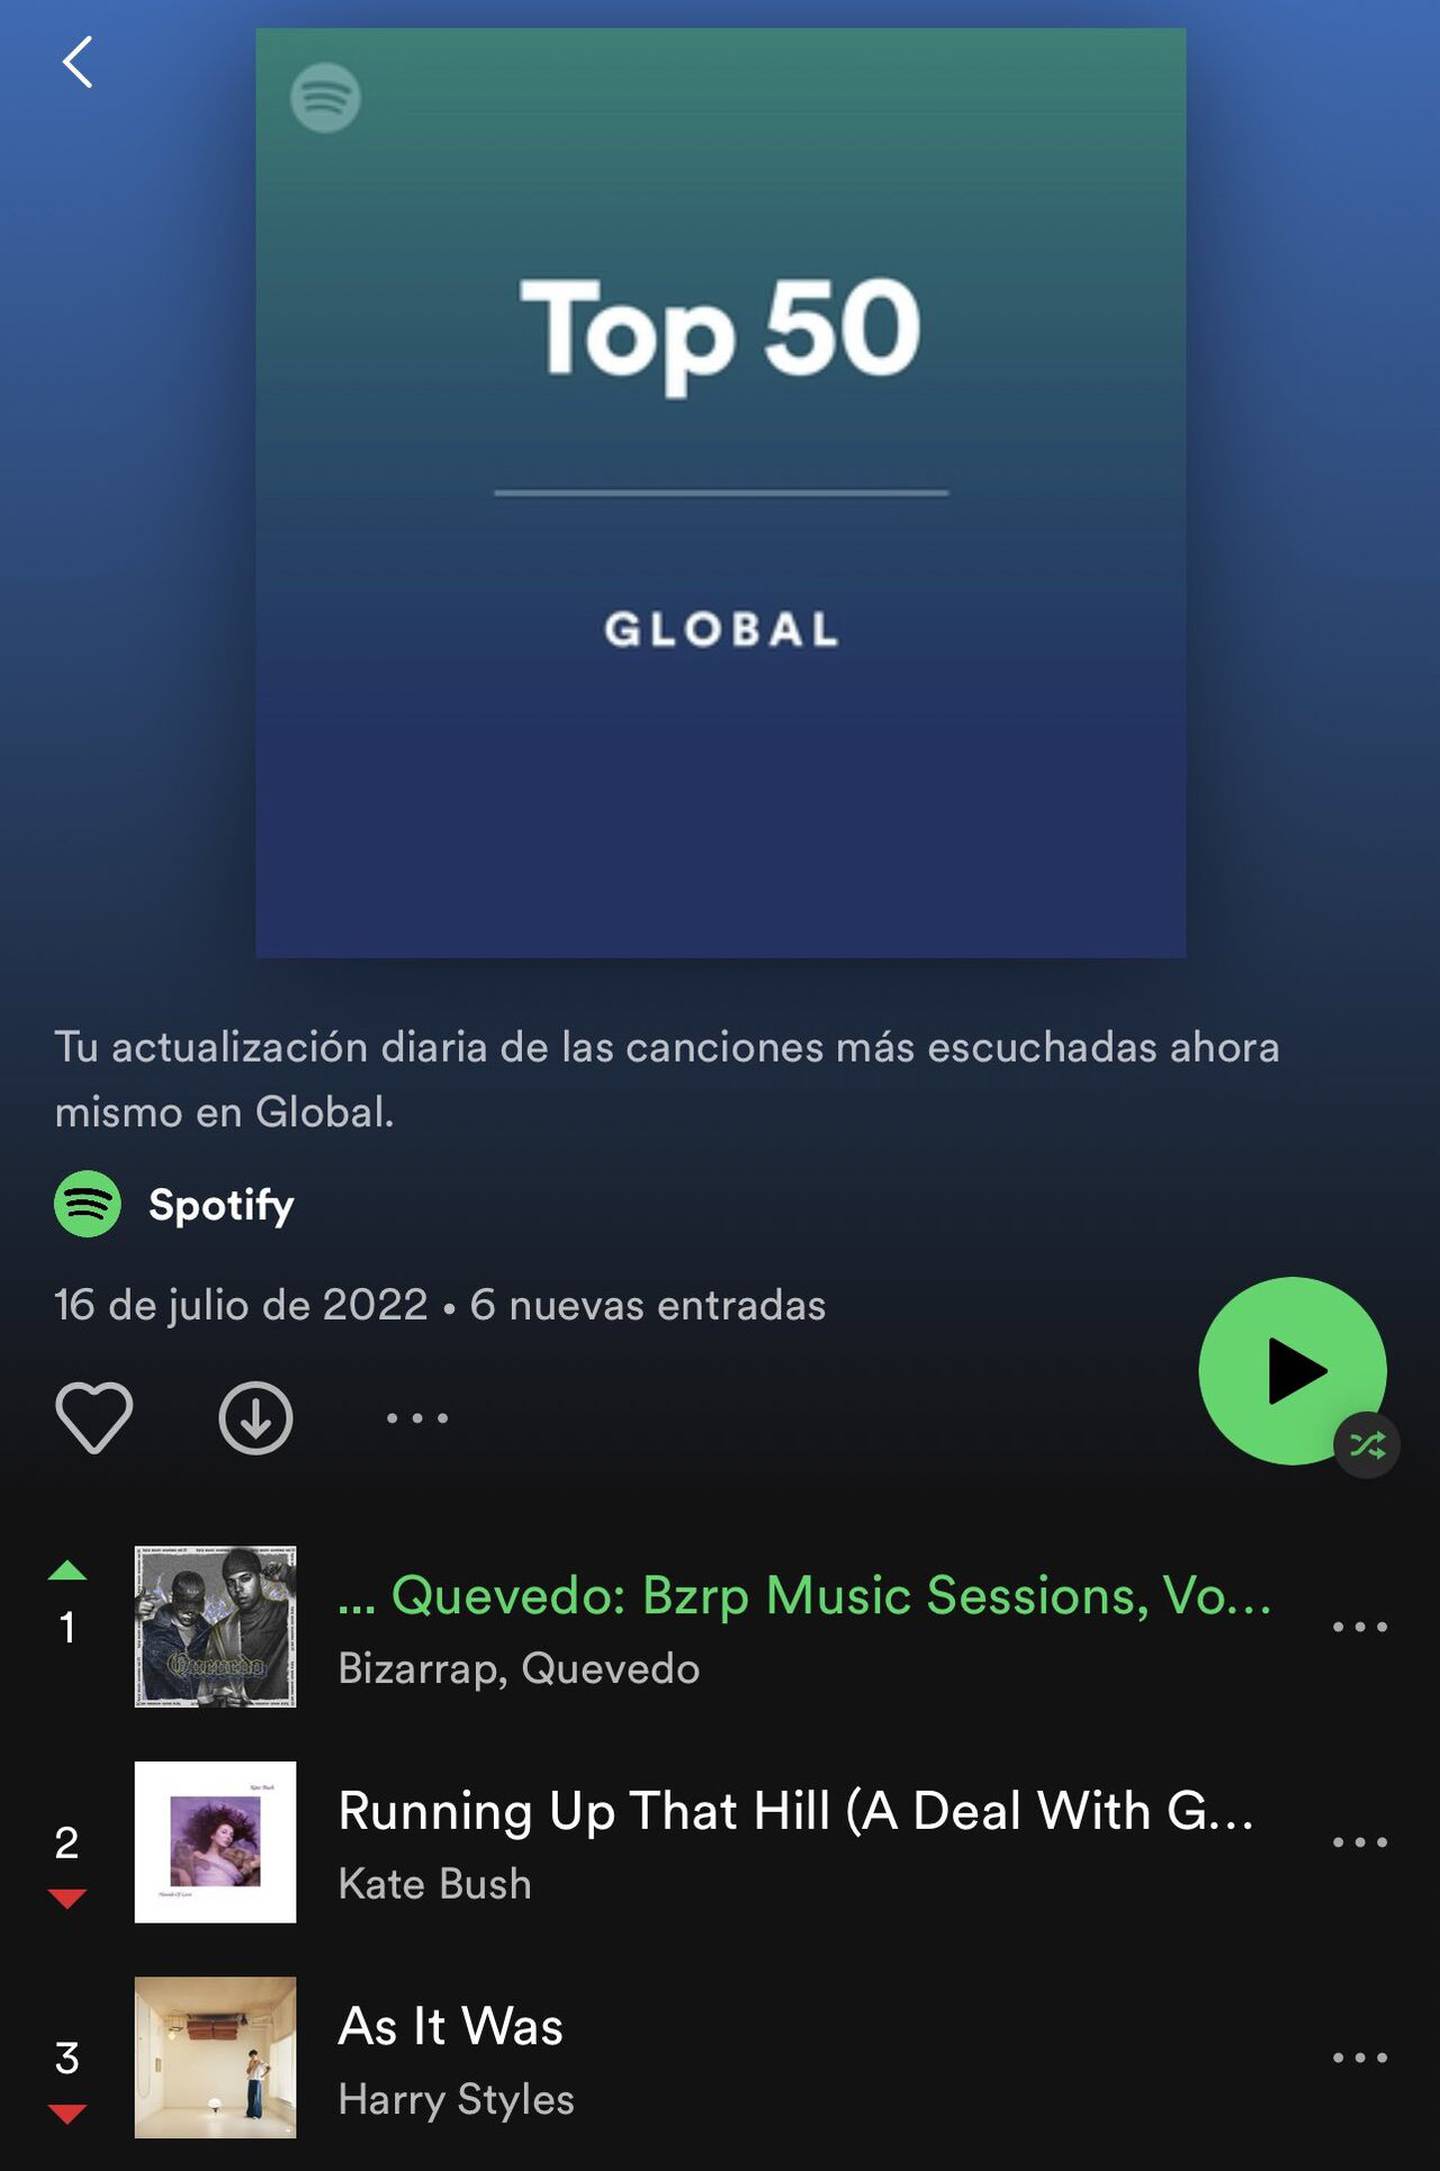 La session Vol. 52 de Bizarrap y Quevedo alcanzó el primer puesto en el chart globaldfd